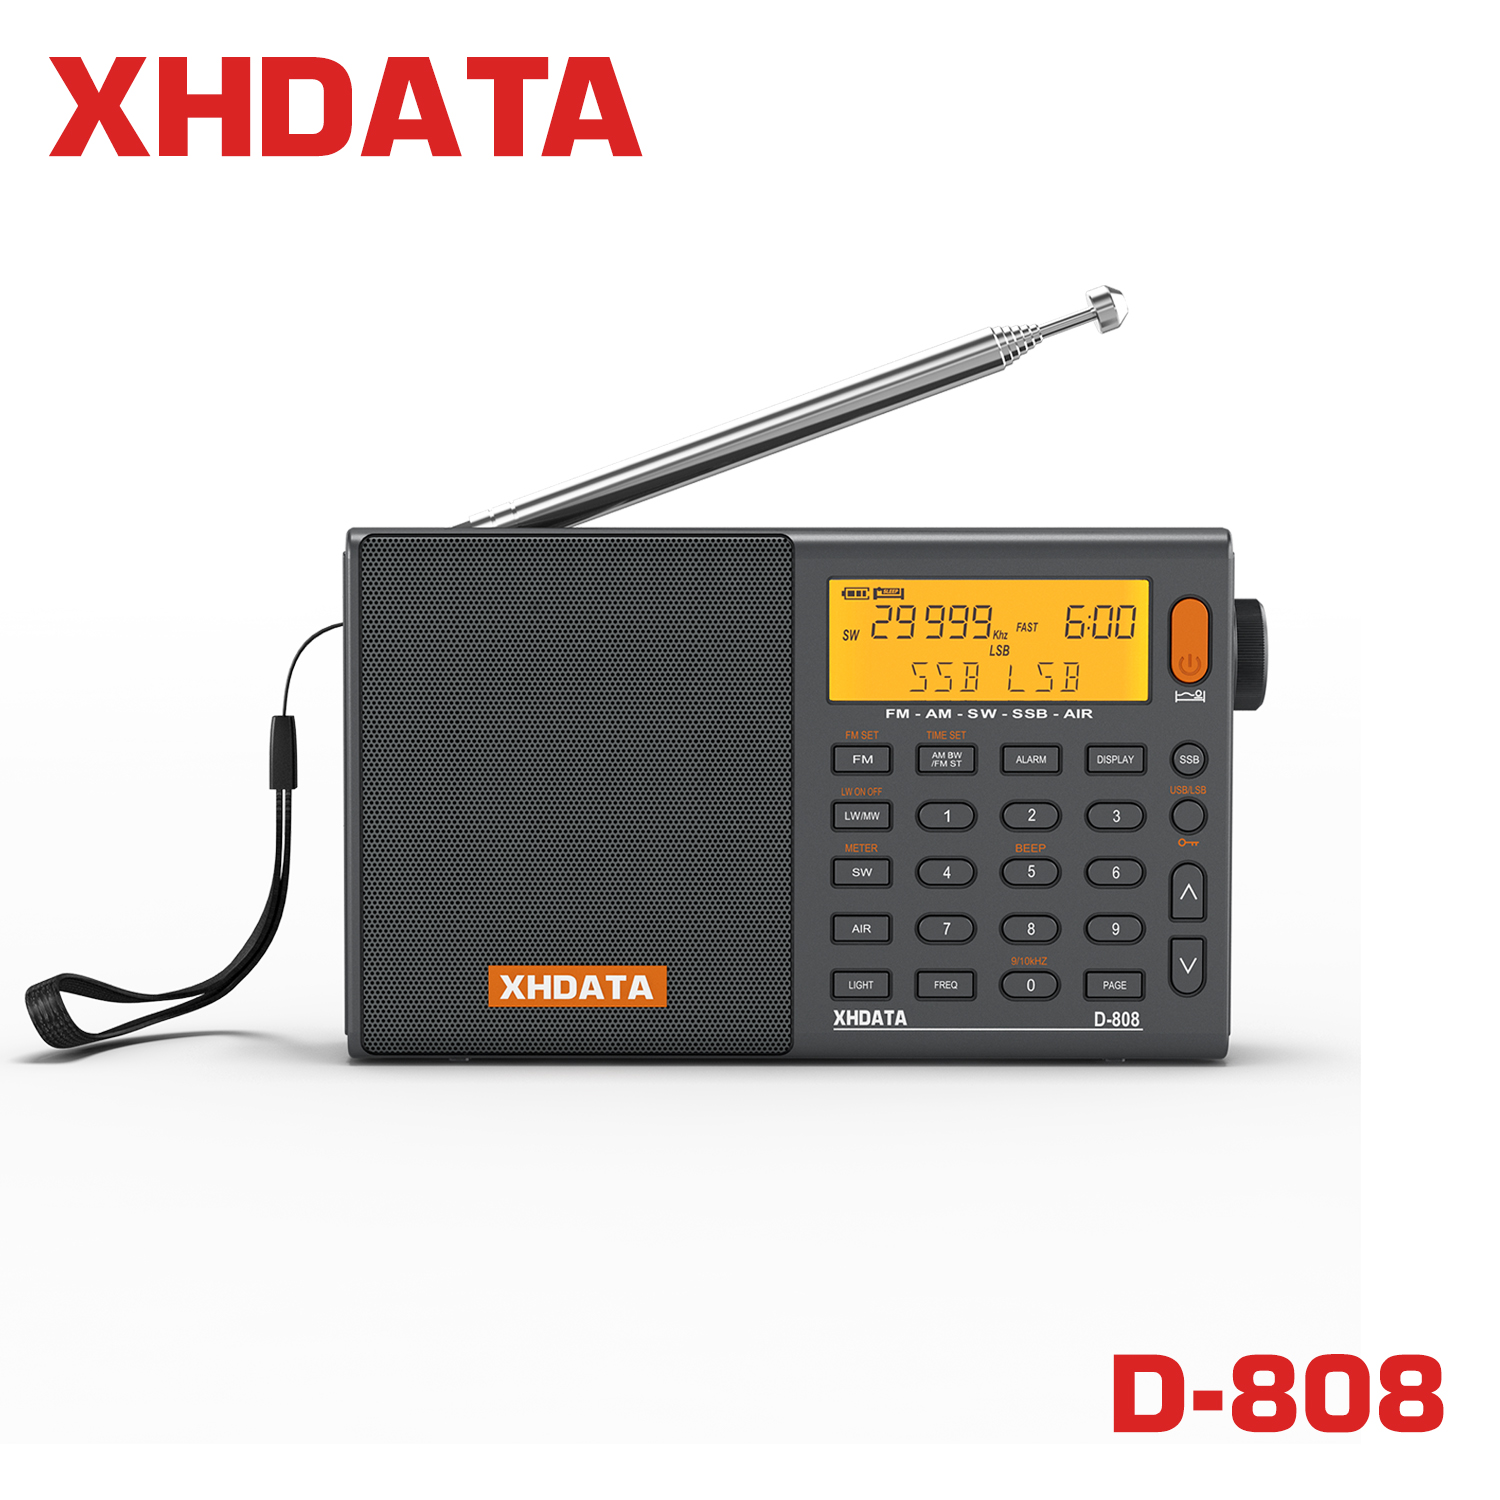 XHDATA D-808 วิทยุพกพา am/fm/sw/mw/lw ssb air วิทยุ